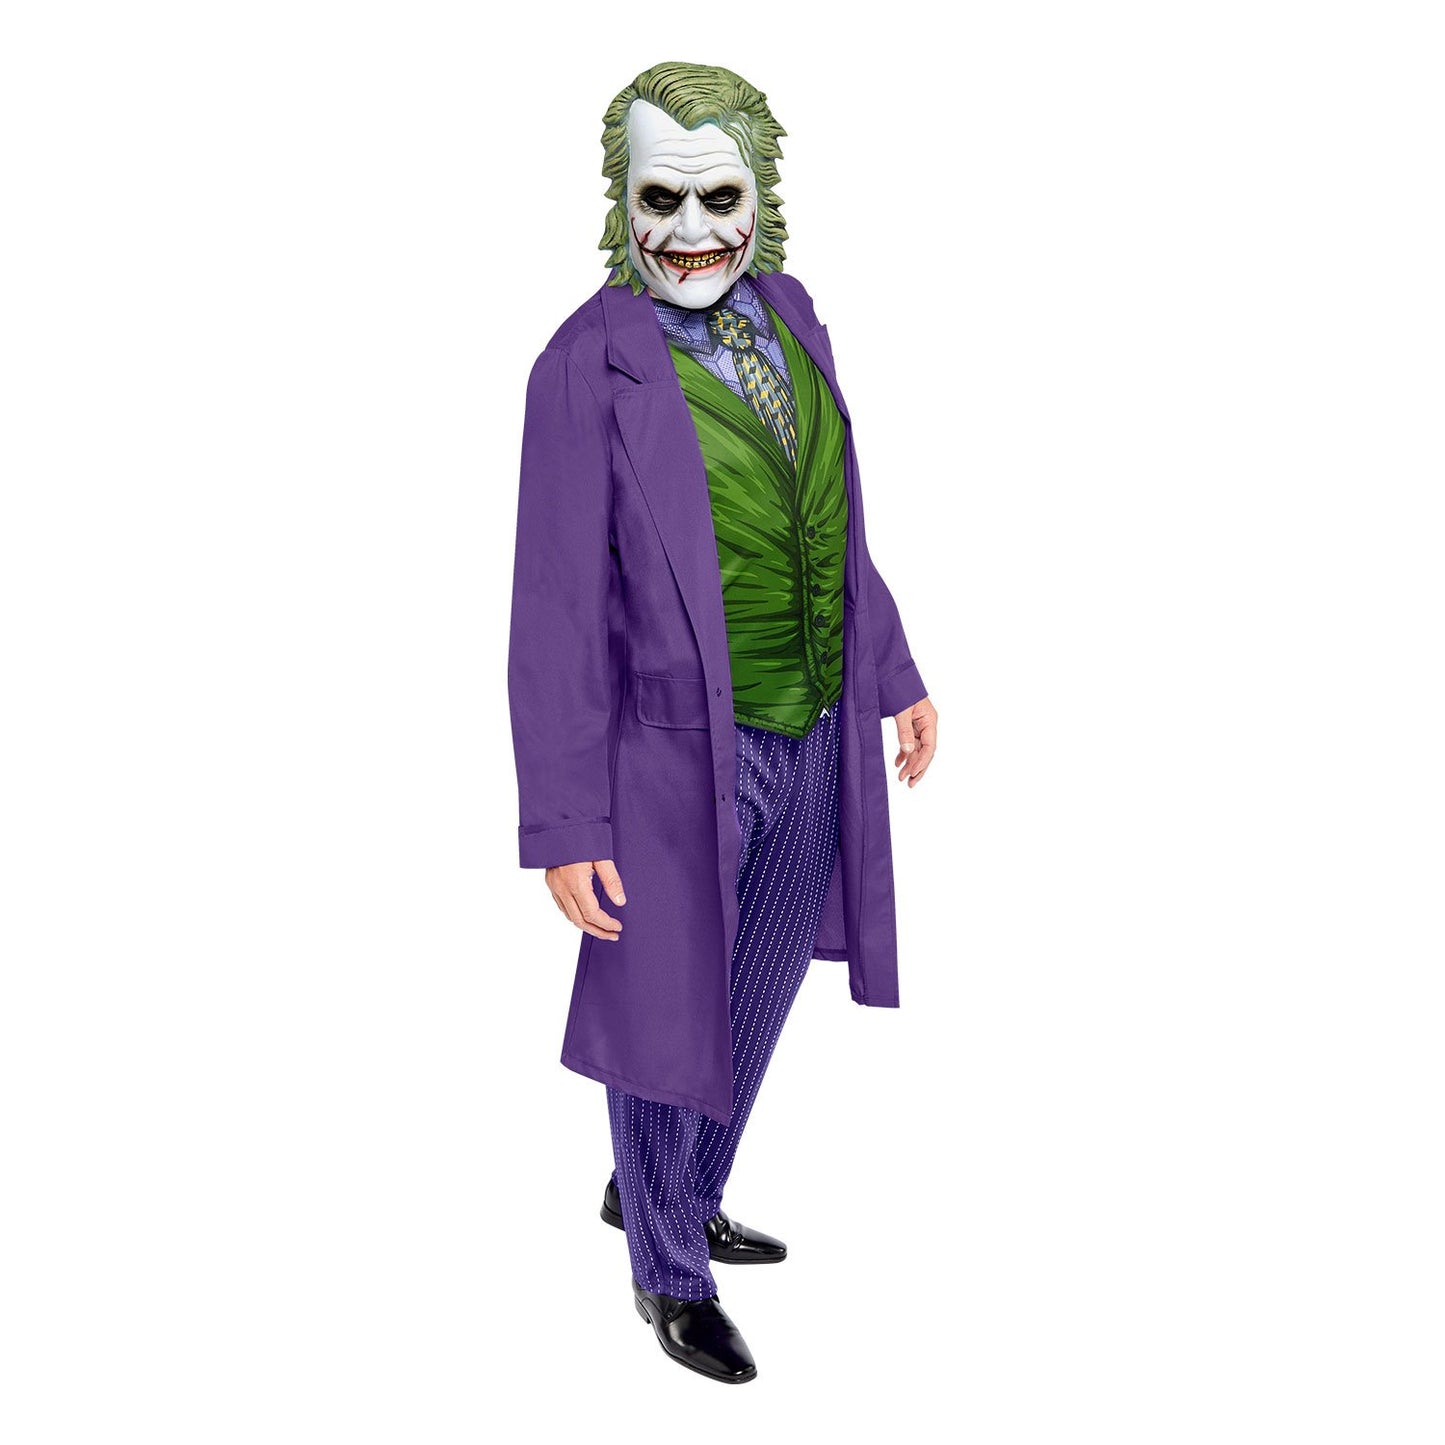 Joker Movie Costume